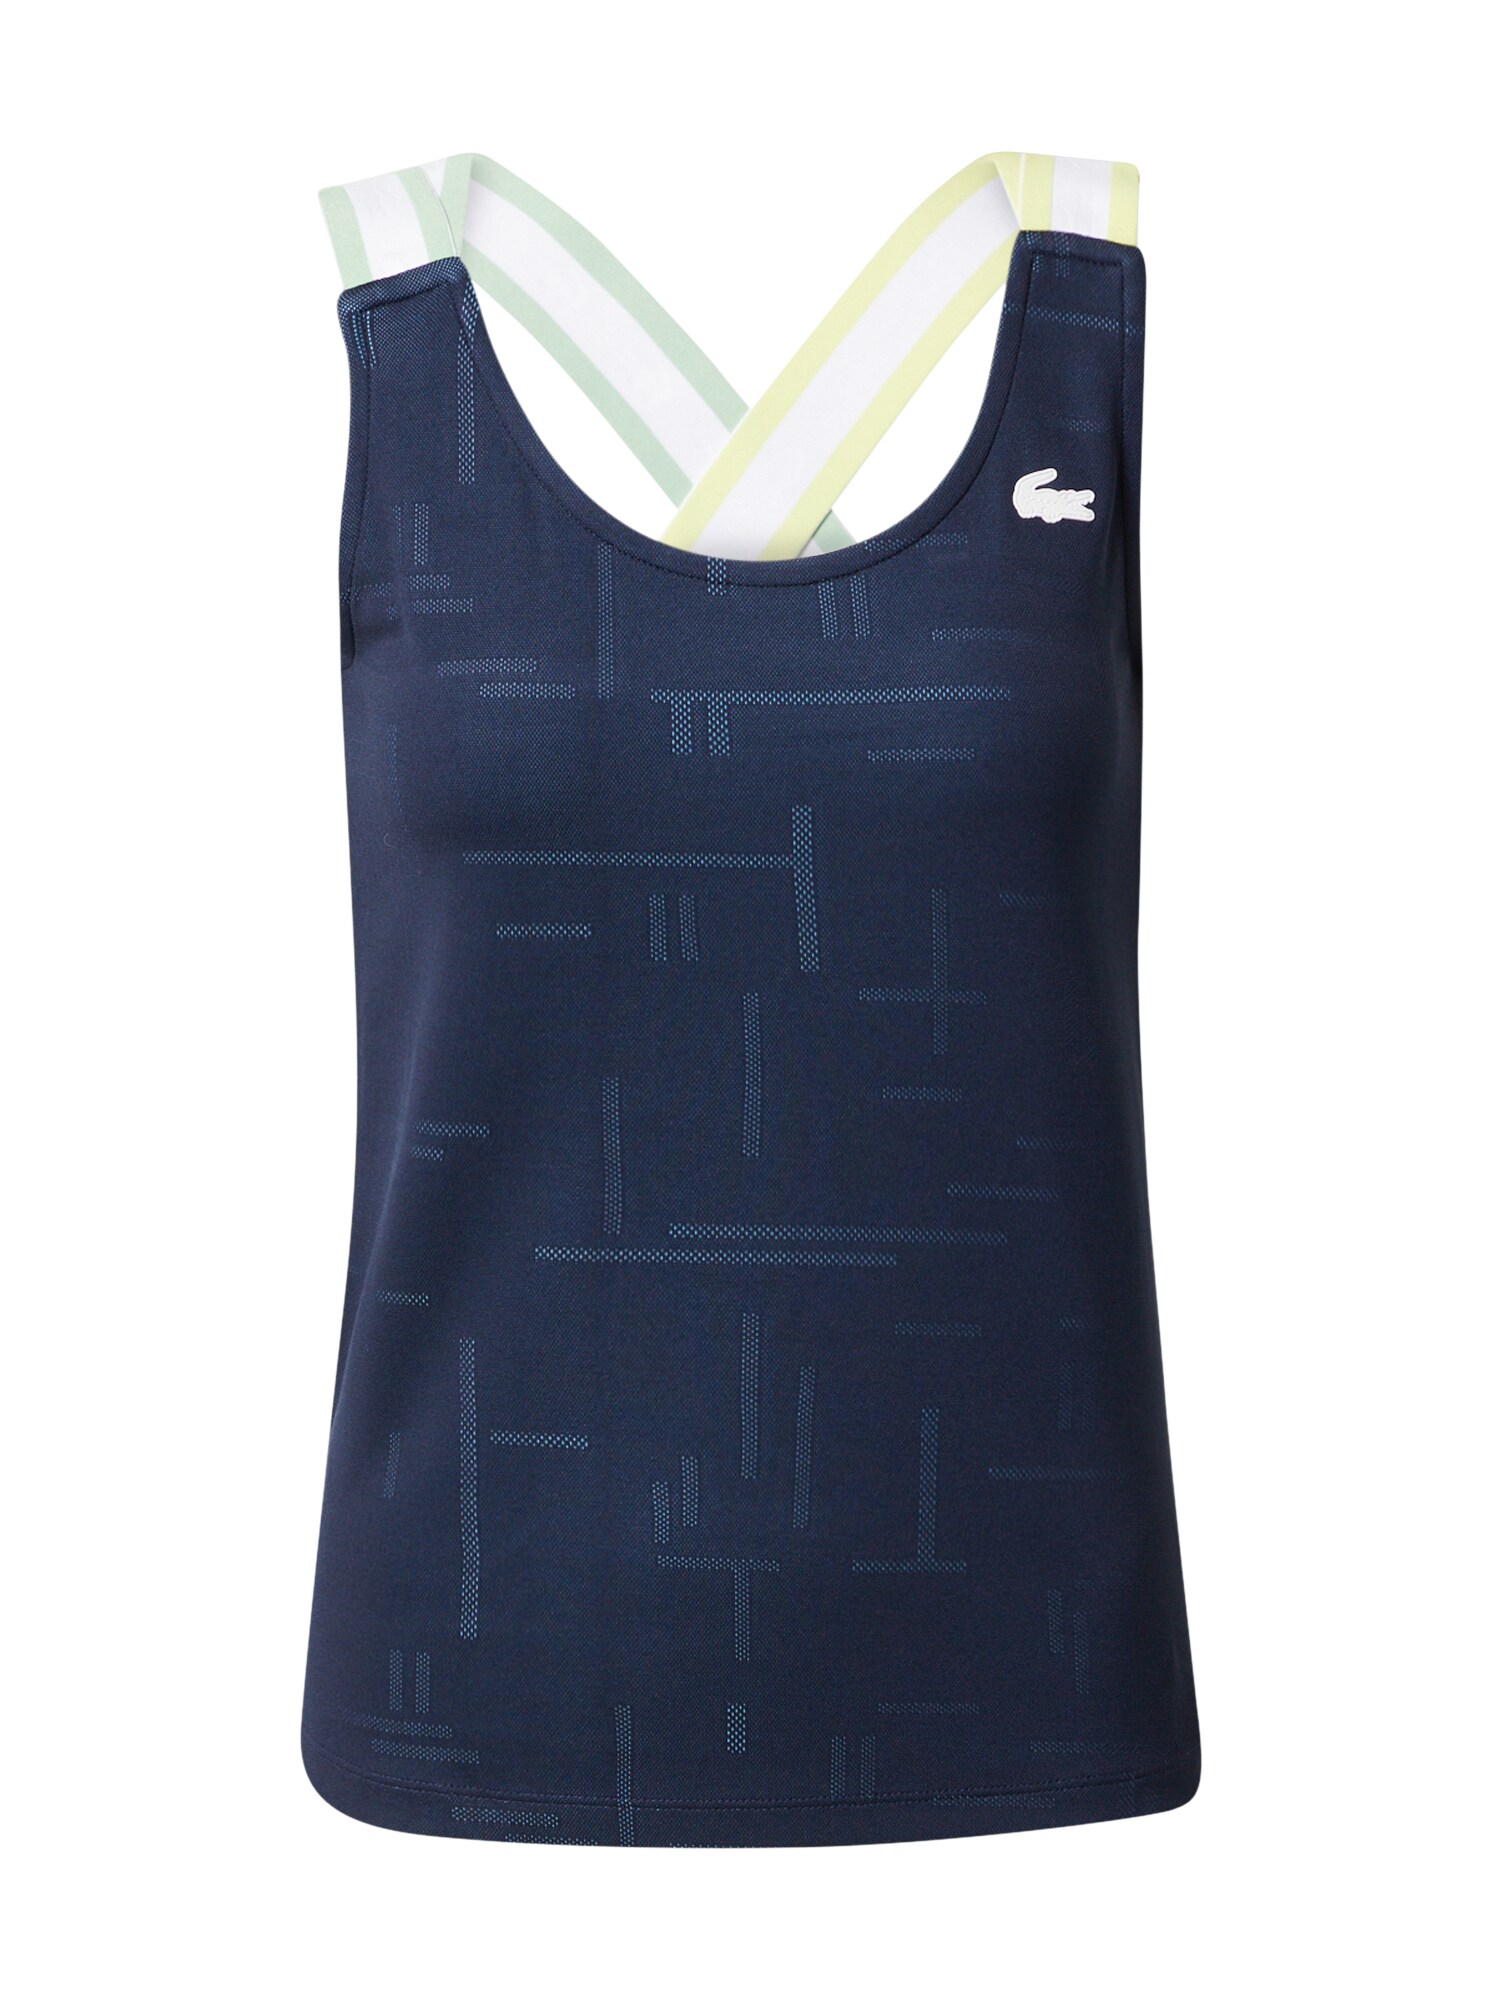 Lacoste Sport Sportiniai marškinėliai be rankovių gelsvai pilka spalva / šviesiai mėlyna / tamsiai mėlyna / balta